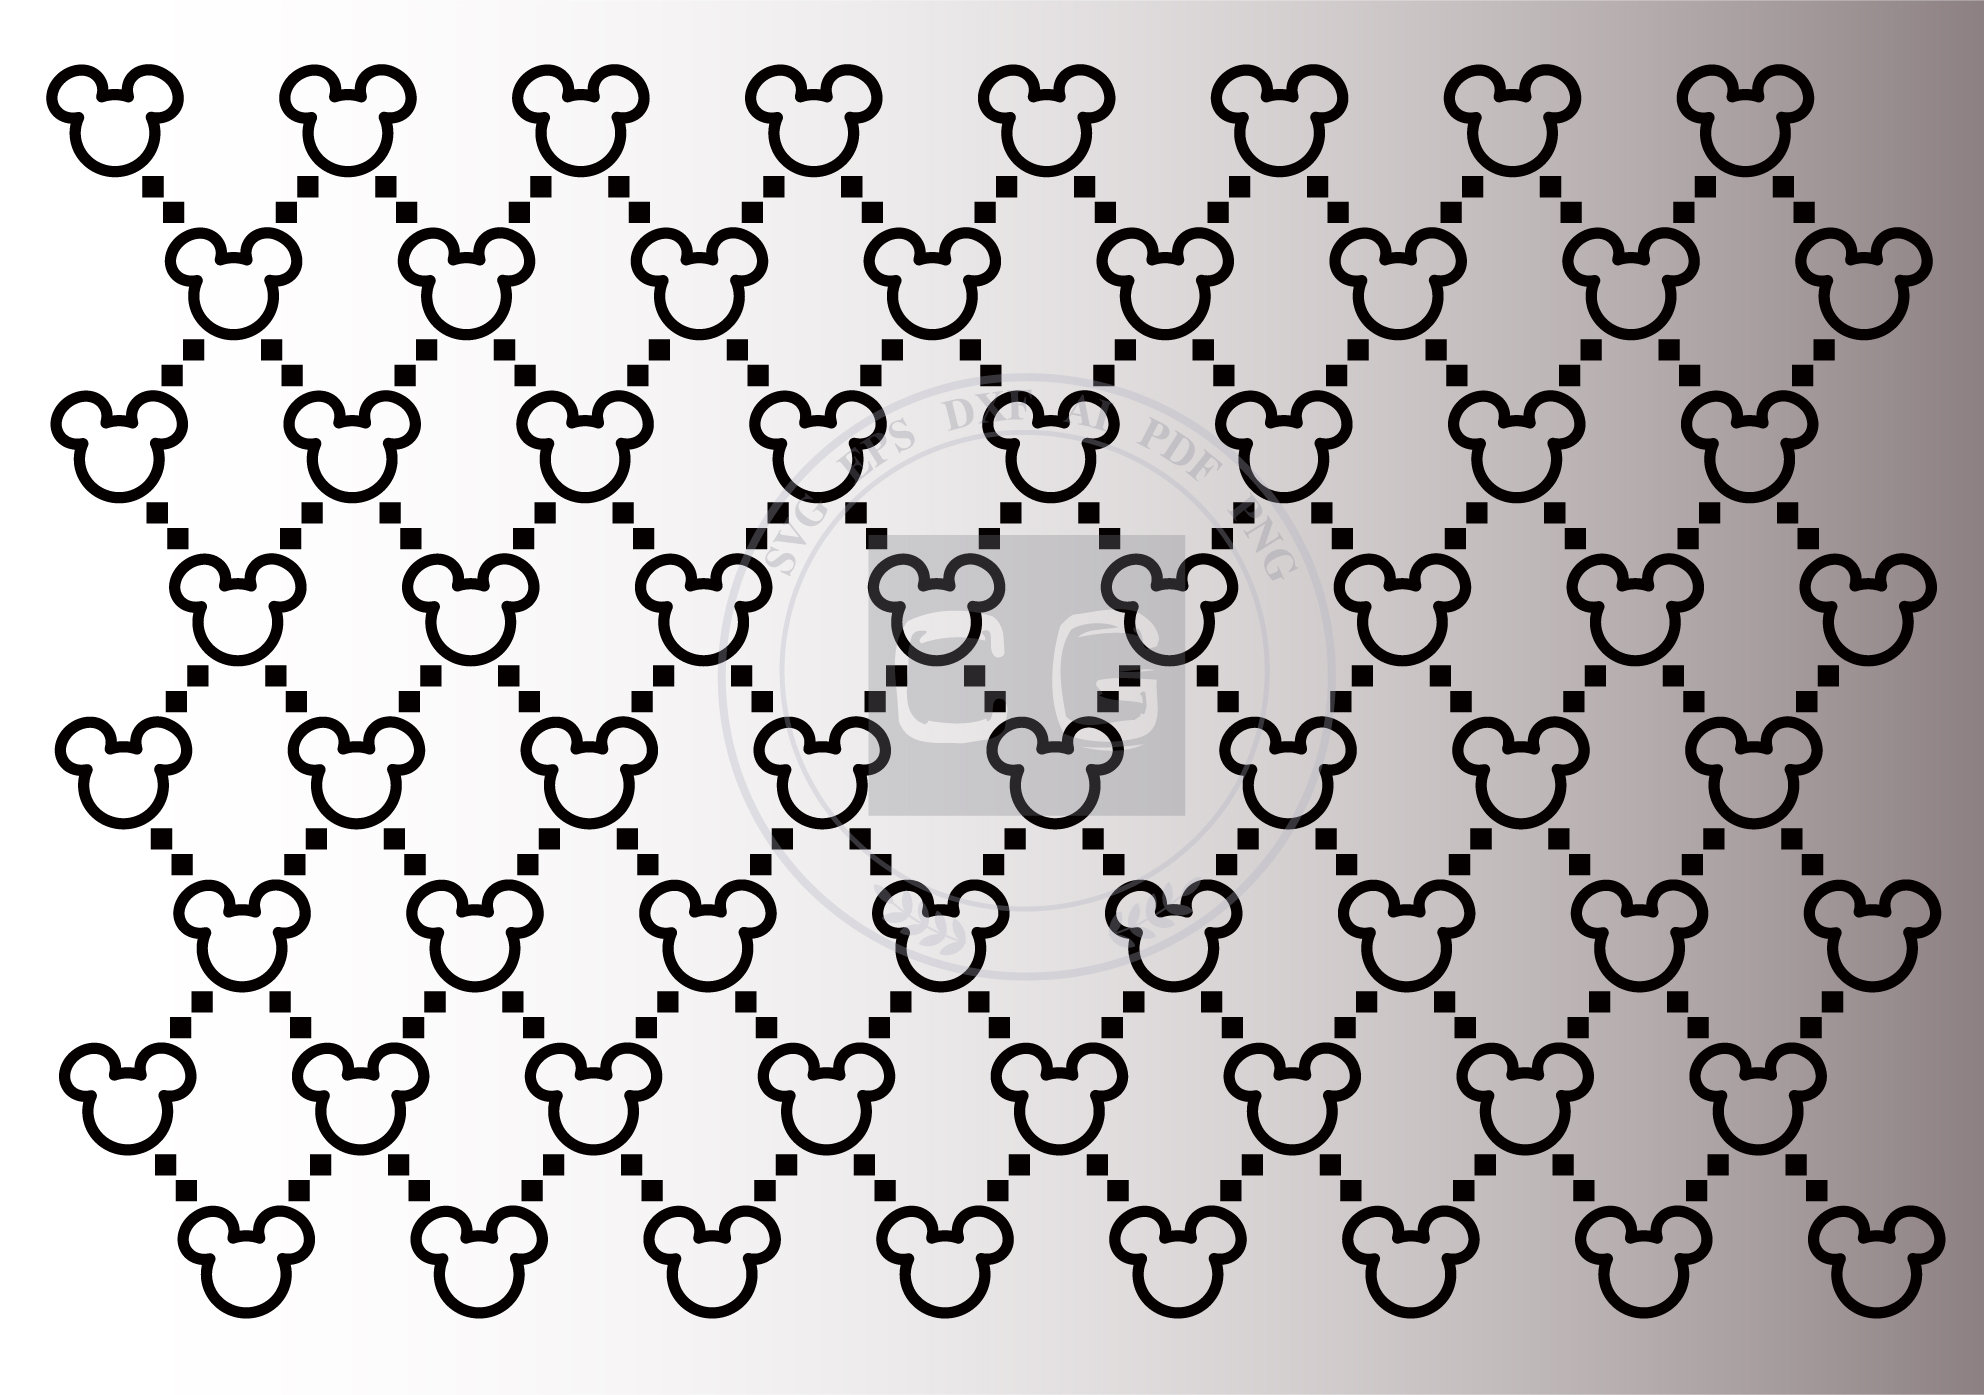 Gucci Pattern Mickey Head SVG